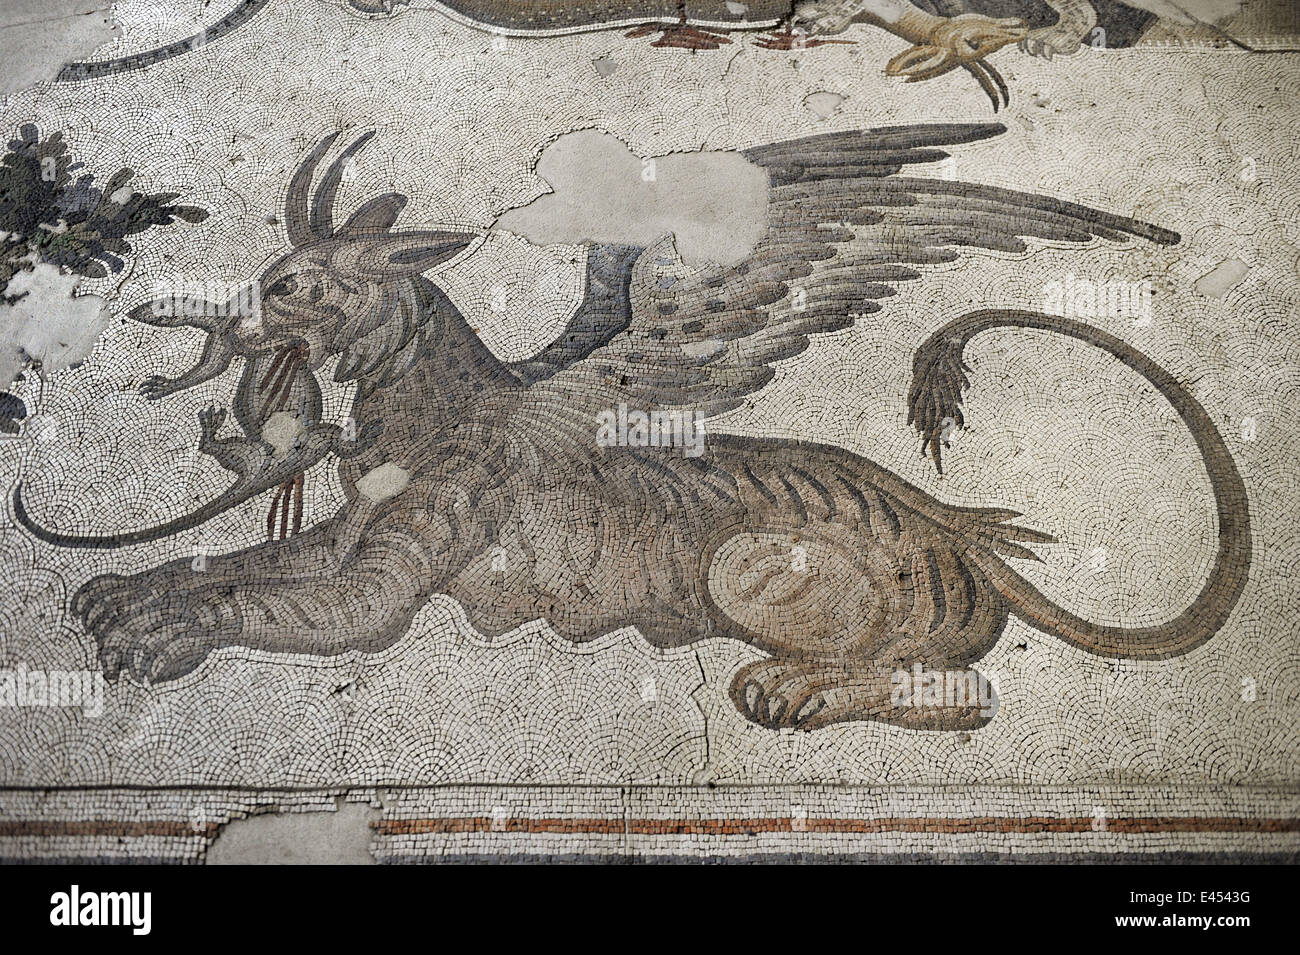 Großer Palast Mosaik-Museum. 4.-6. Jahrhunderte. Detail eines Mosaiks Darstellung ein Löwe Greif. Istanbul. Turkei. Stockfoto